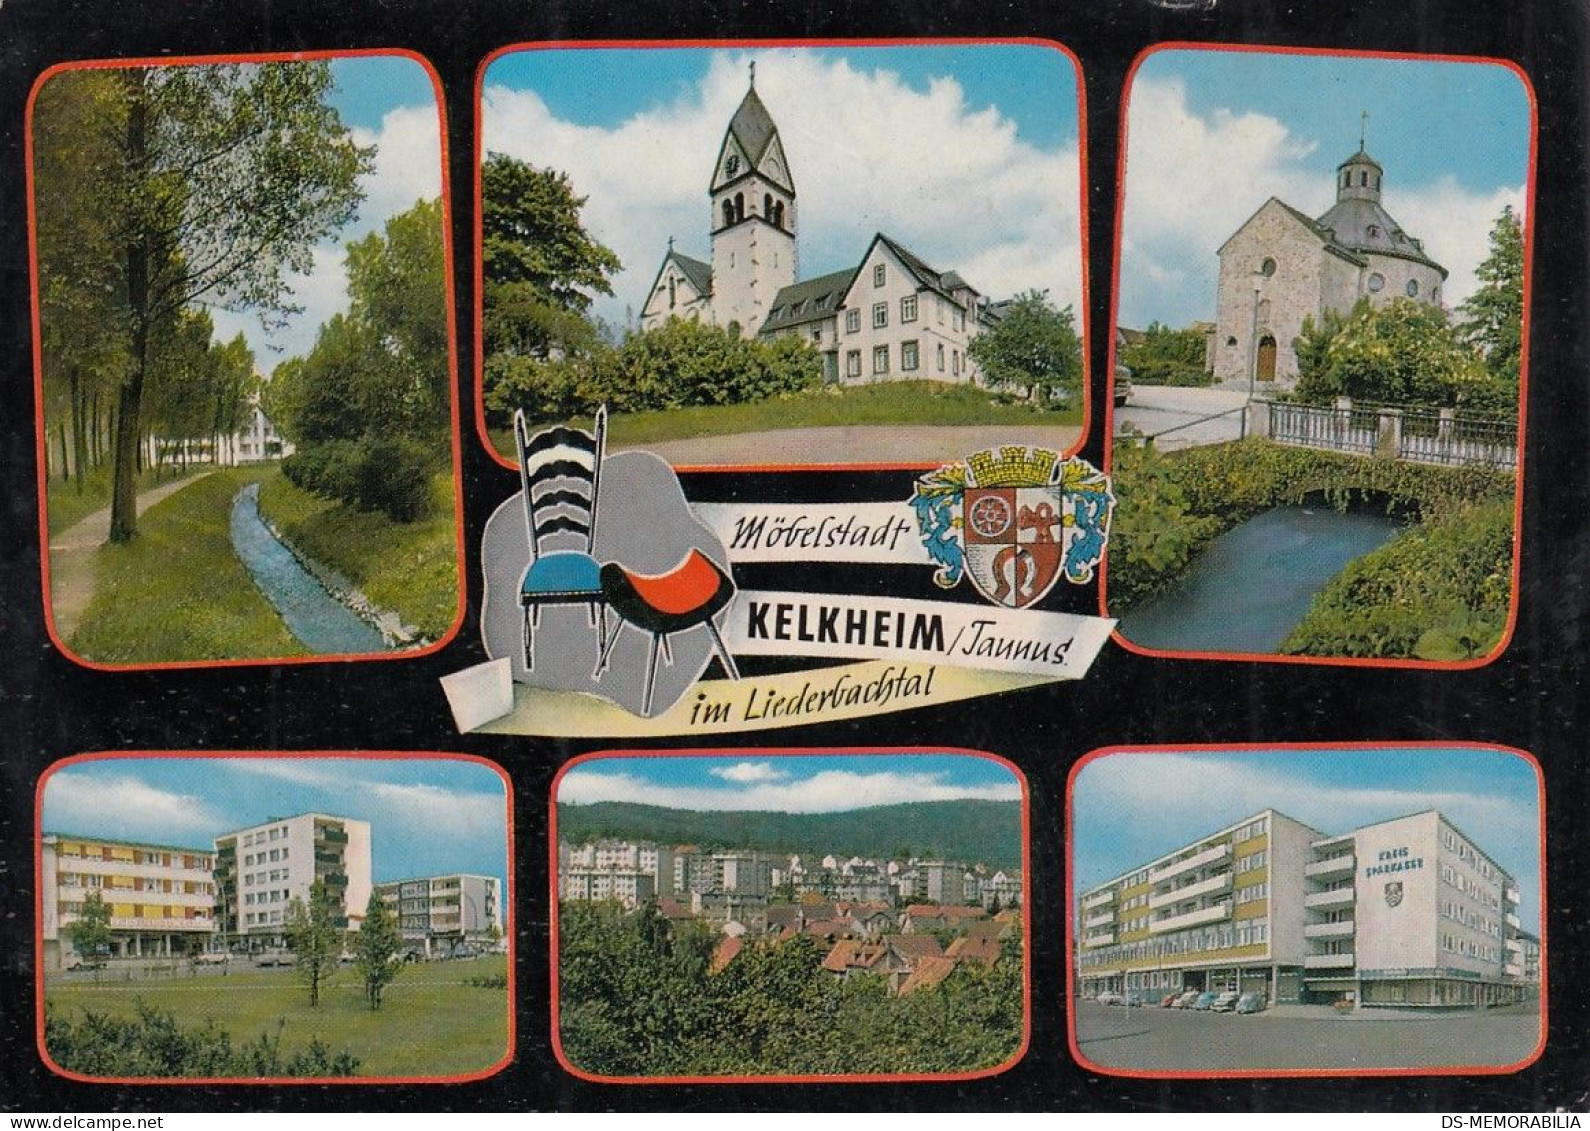 Kelkheim Taunus - Kelkheim